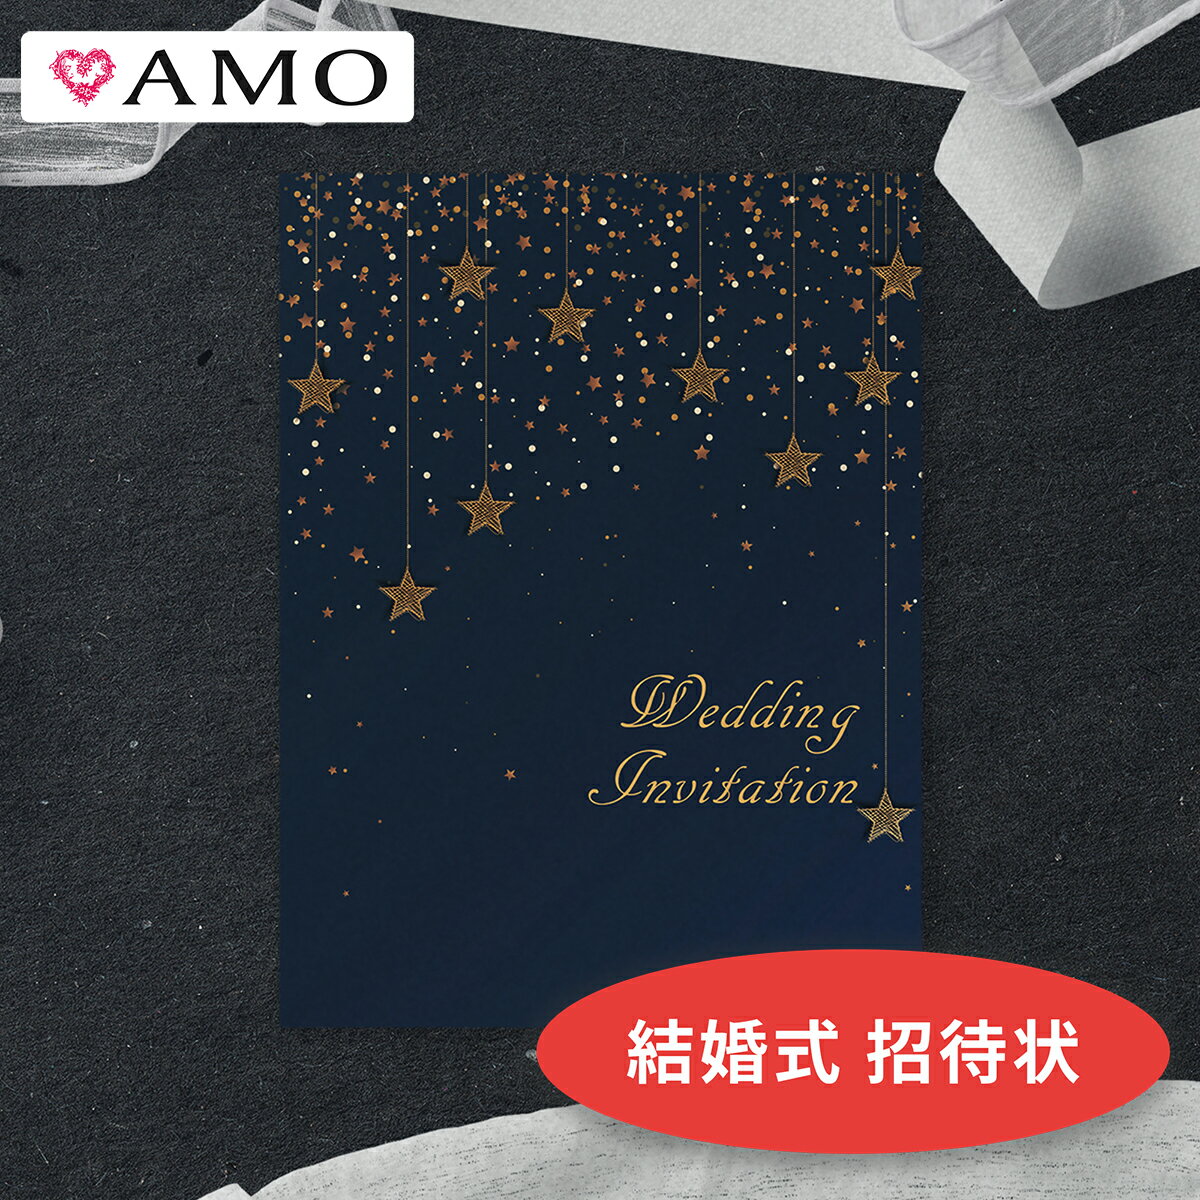 AMO 結婚式 招待状 手作りキット 満天の星空 (封筒・返信ハガキ付き) インクジェット対応 【30部までメール便可】